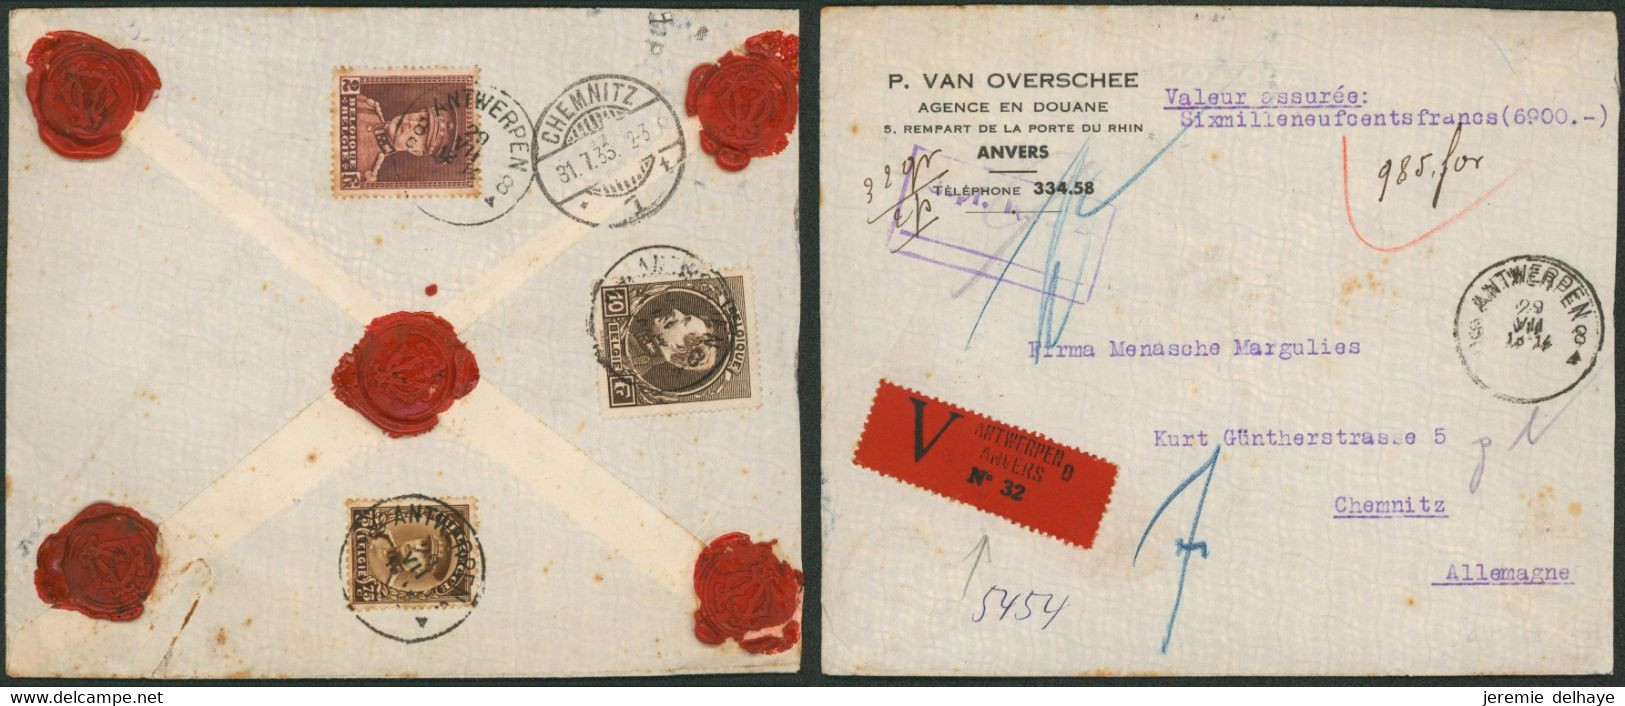 Affranc. Tricolore çàd N°289, 321 Et 341 Sur L. Assurée (6900 Frs, 32 Gr, 2 Ports) De Antwerpen (1933) > Chemnitz (AL) - 1929-1941 Big Montenez